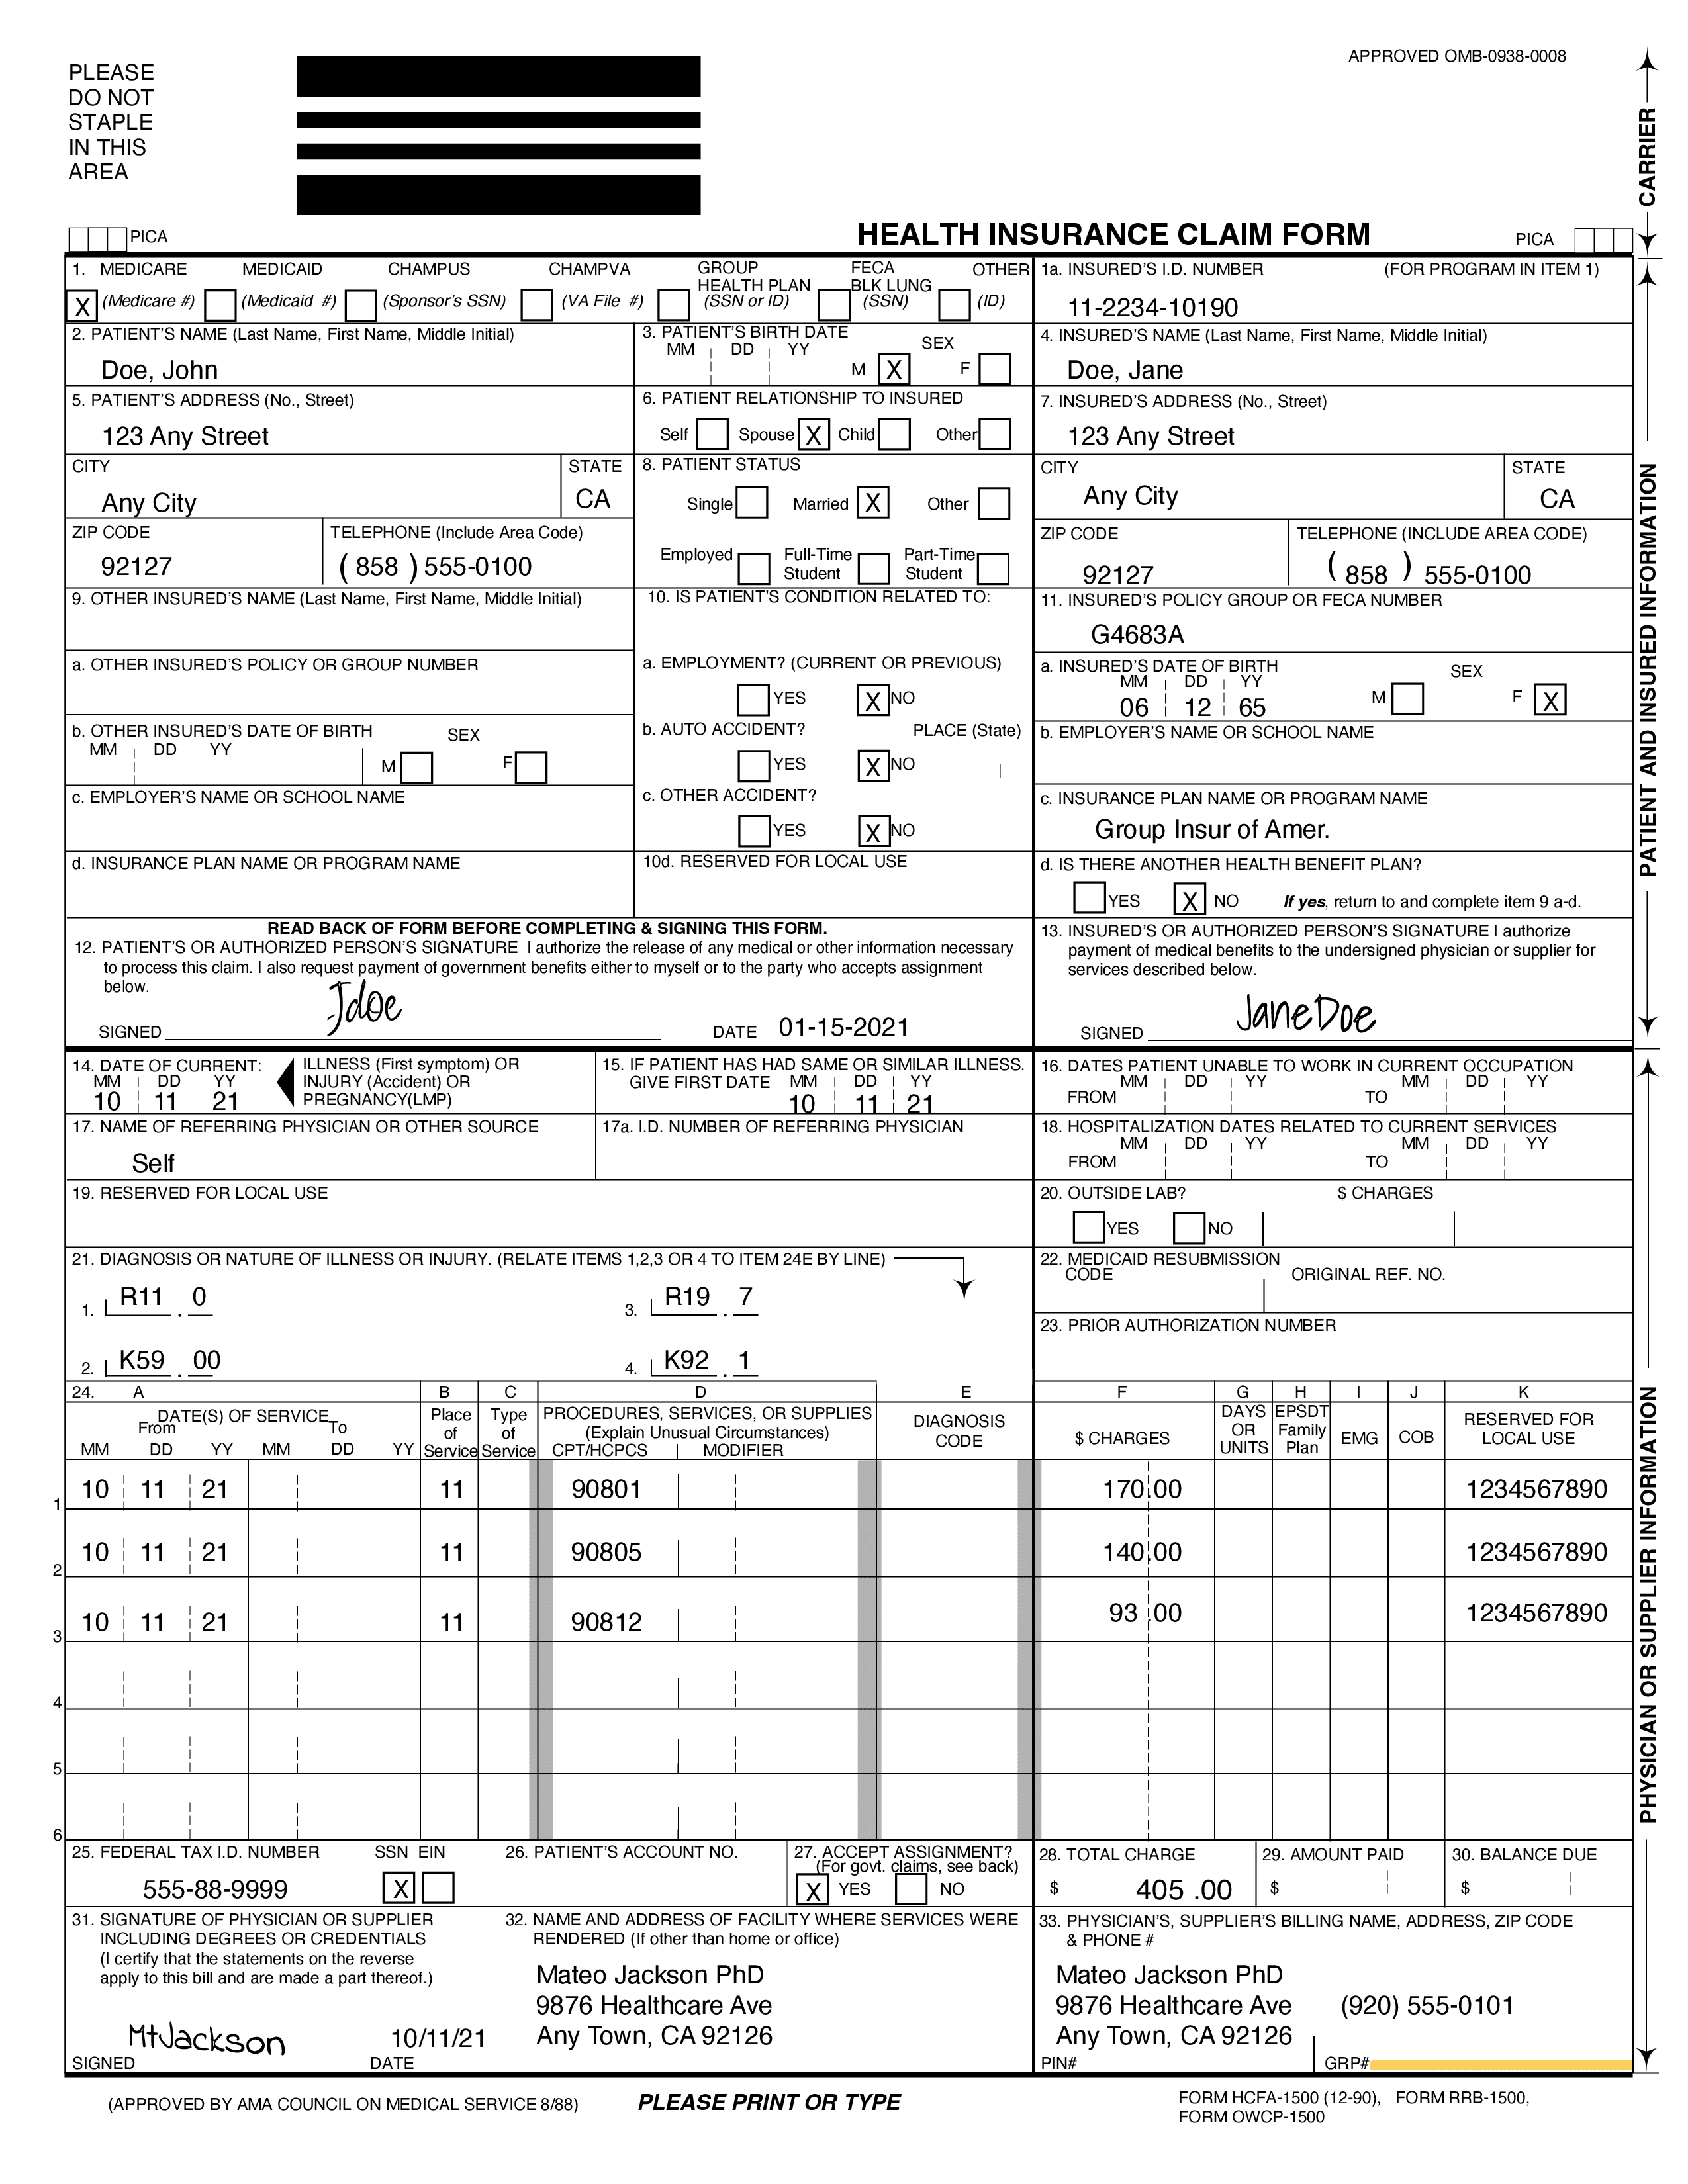 A CMS1500 Claim form